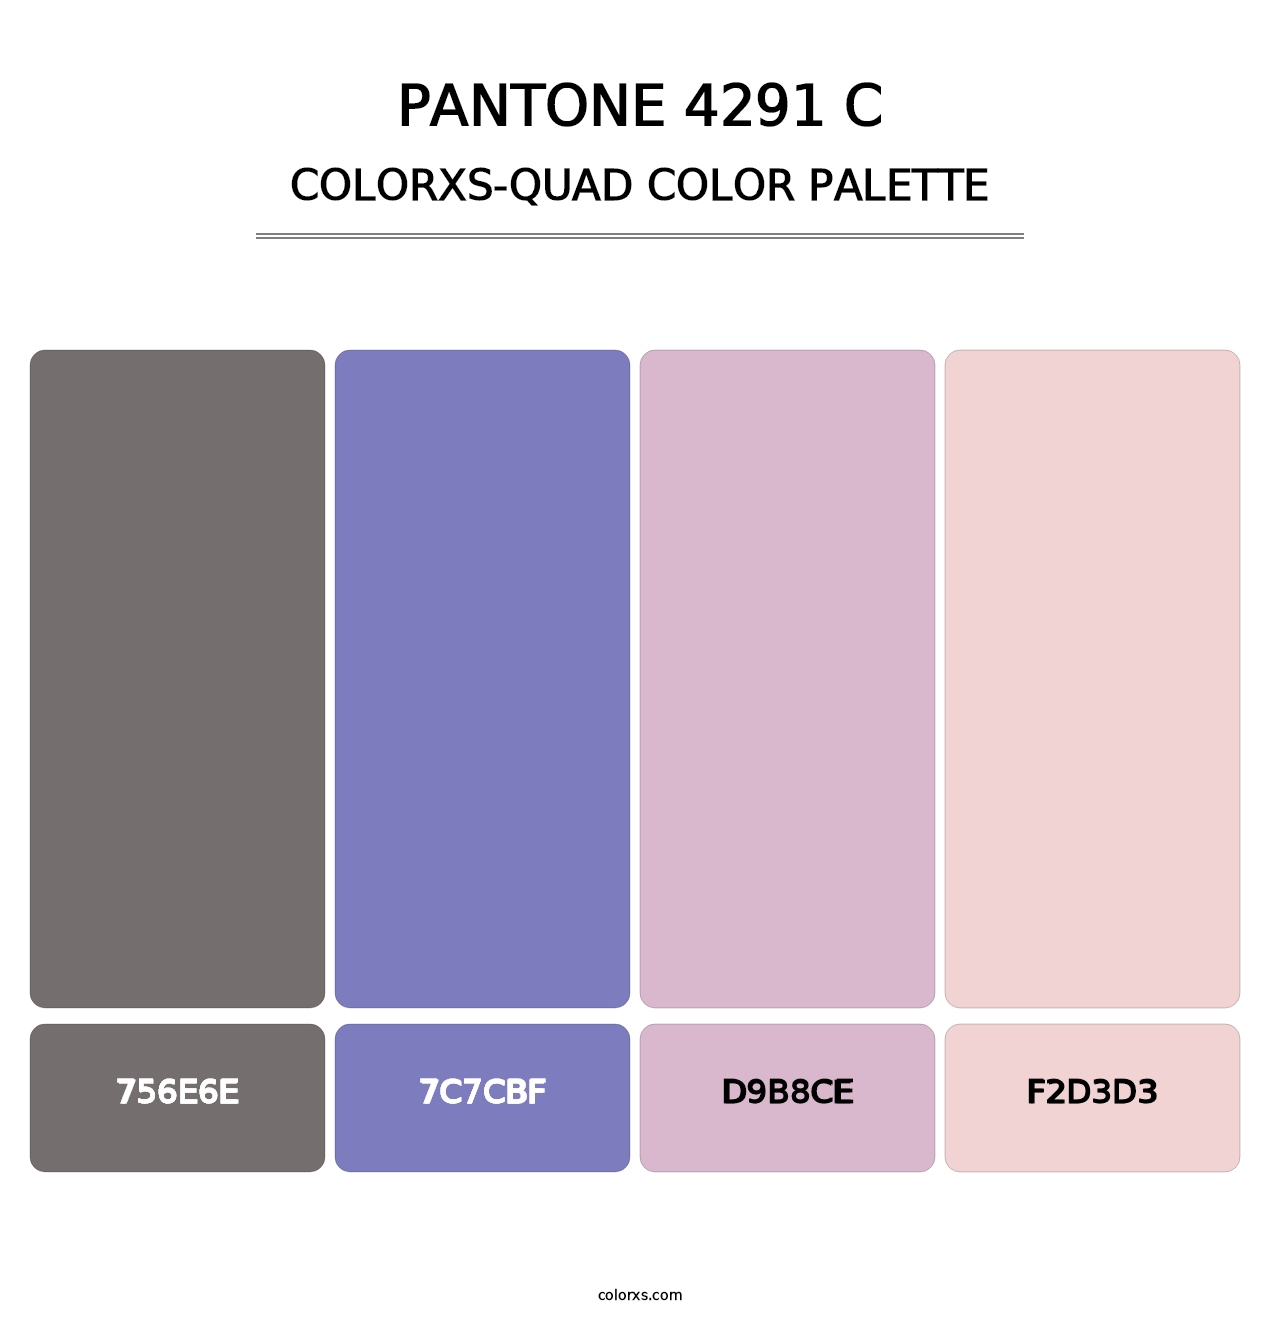 PANTONE 4291 C - Colorxs Quad Palette